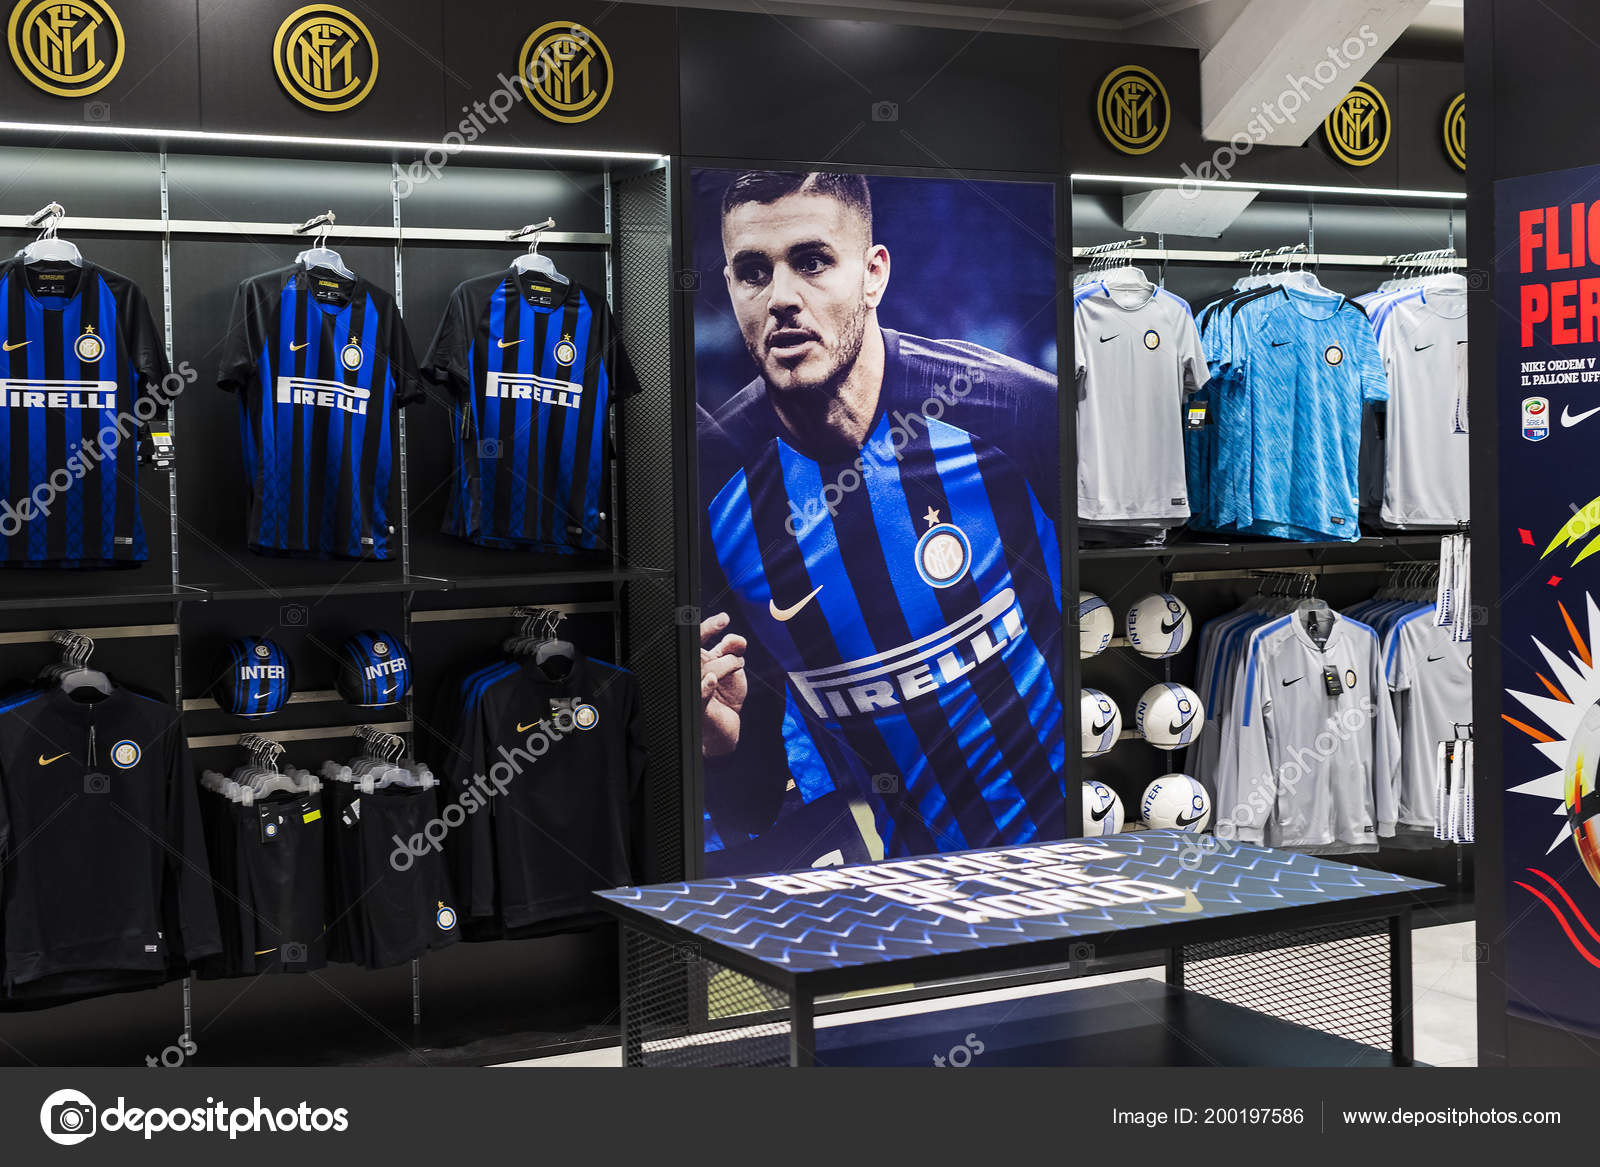 Inter Milan Nike Store